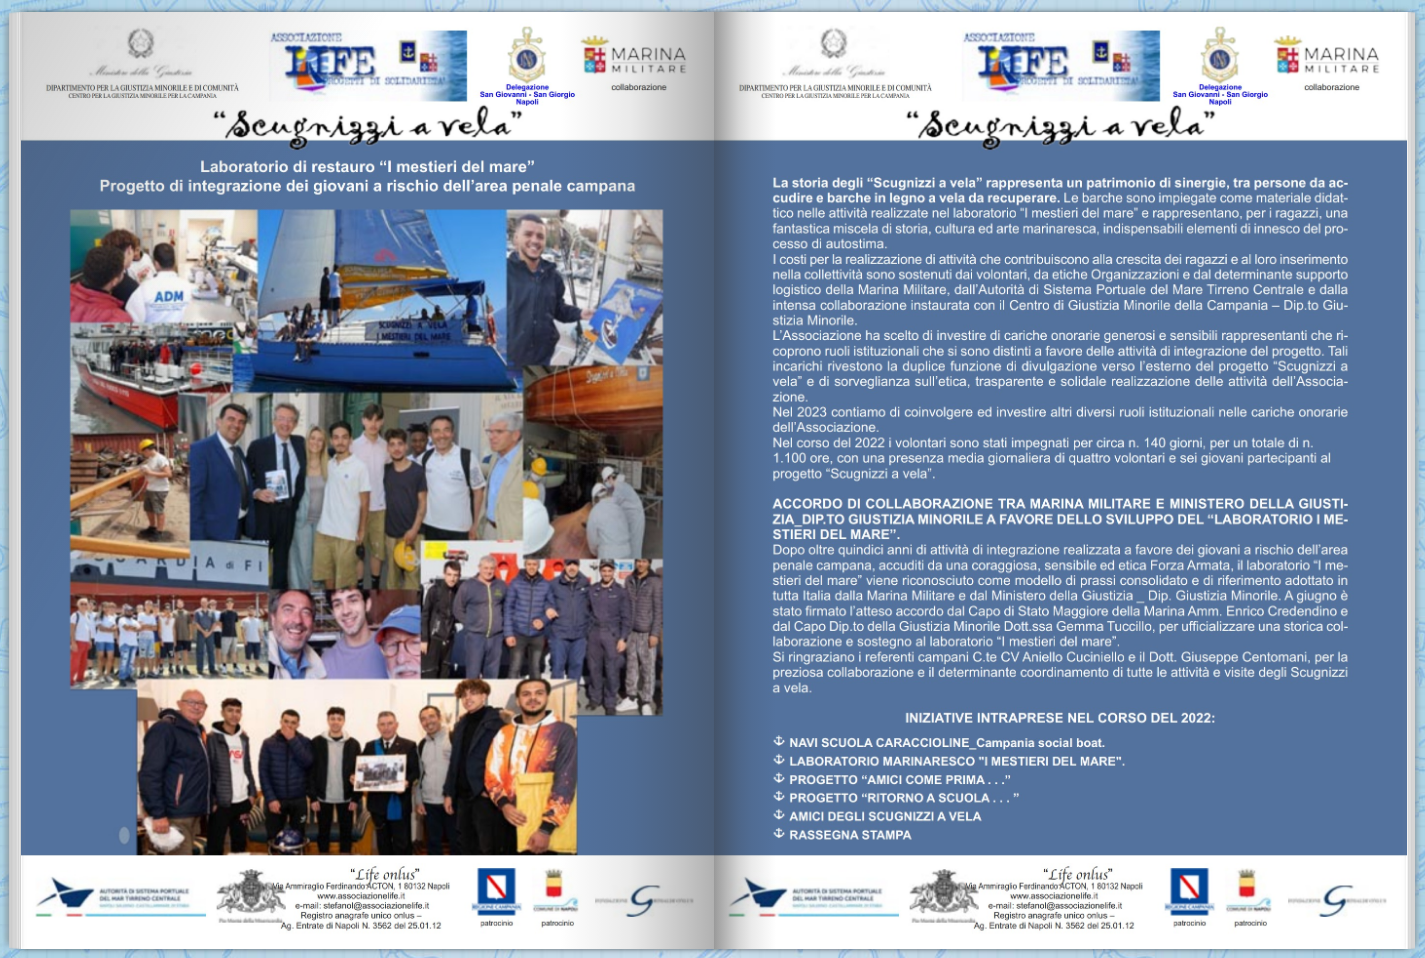 Associazione Life - Scugnizzi a Vela - Marina Militare (3)